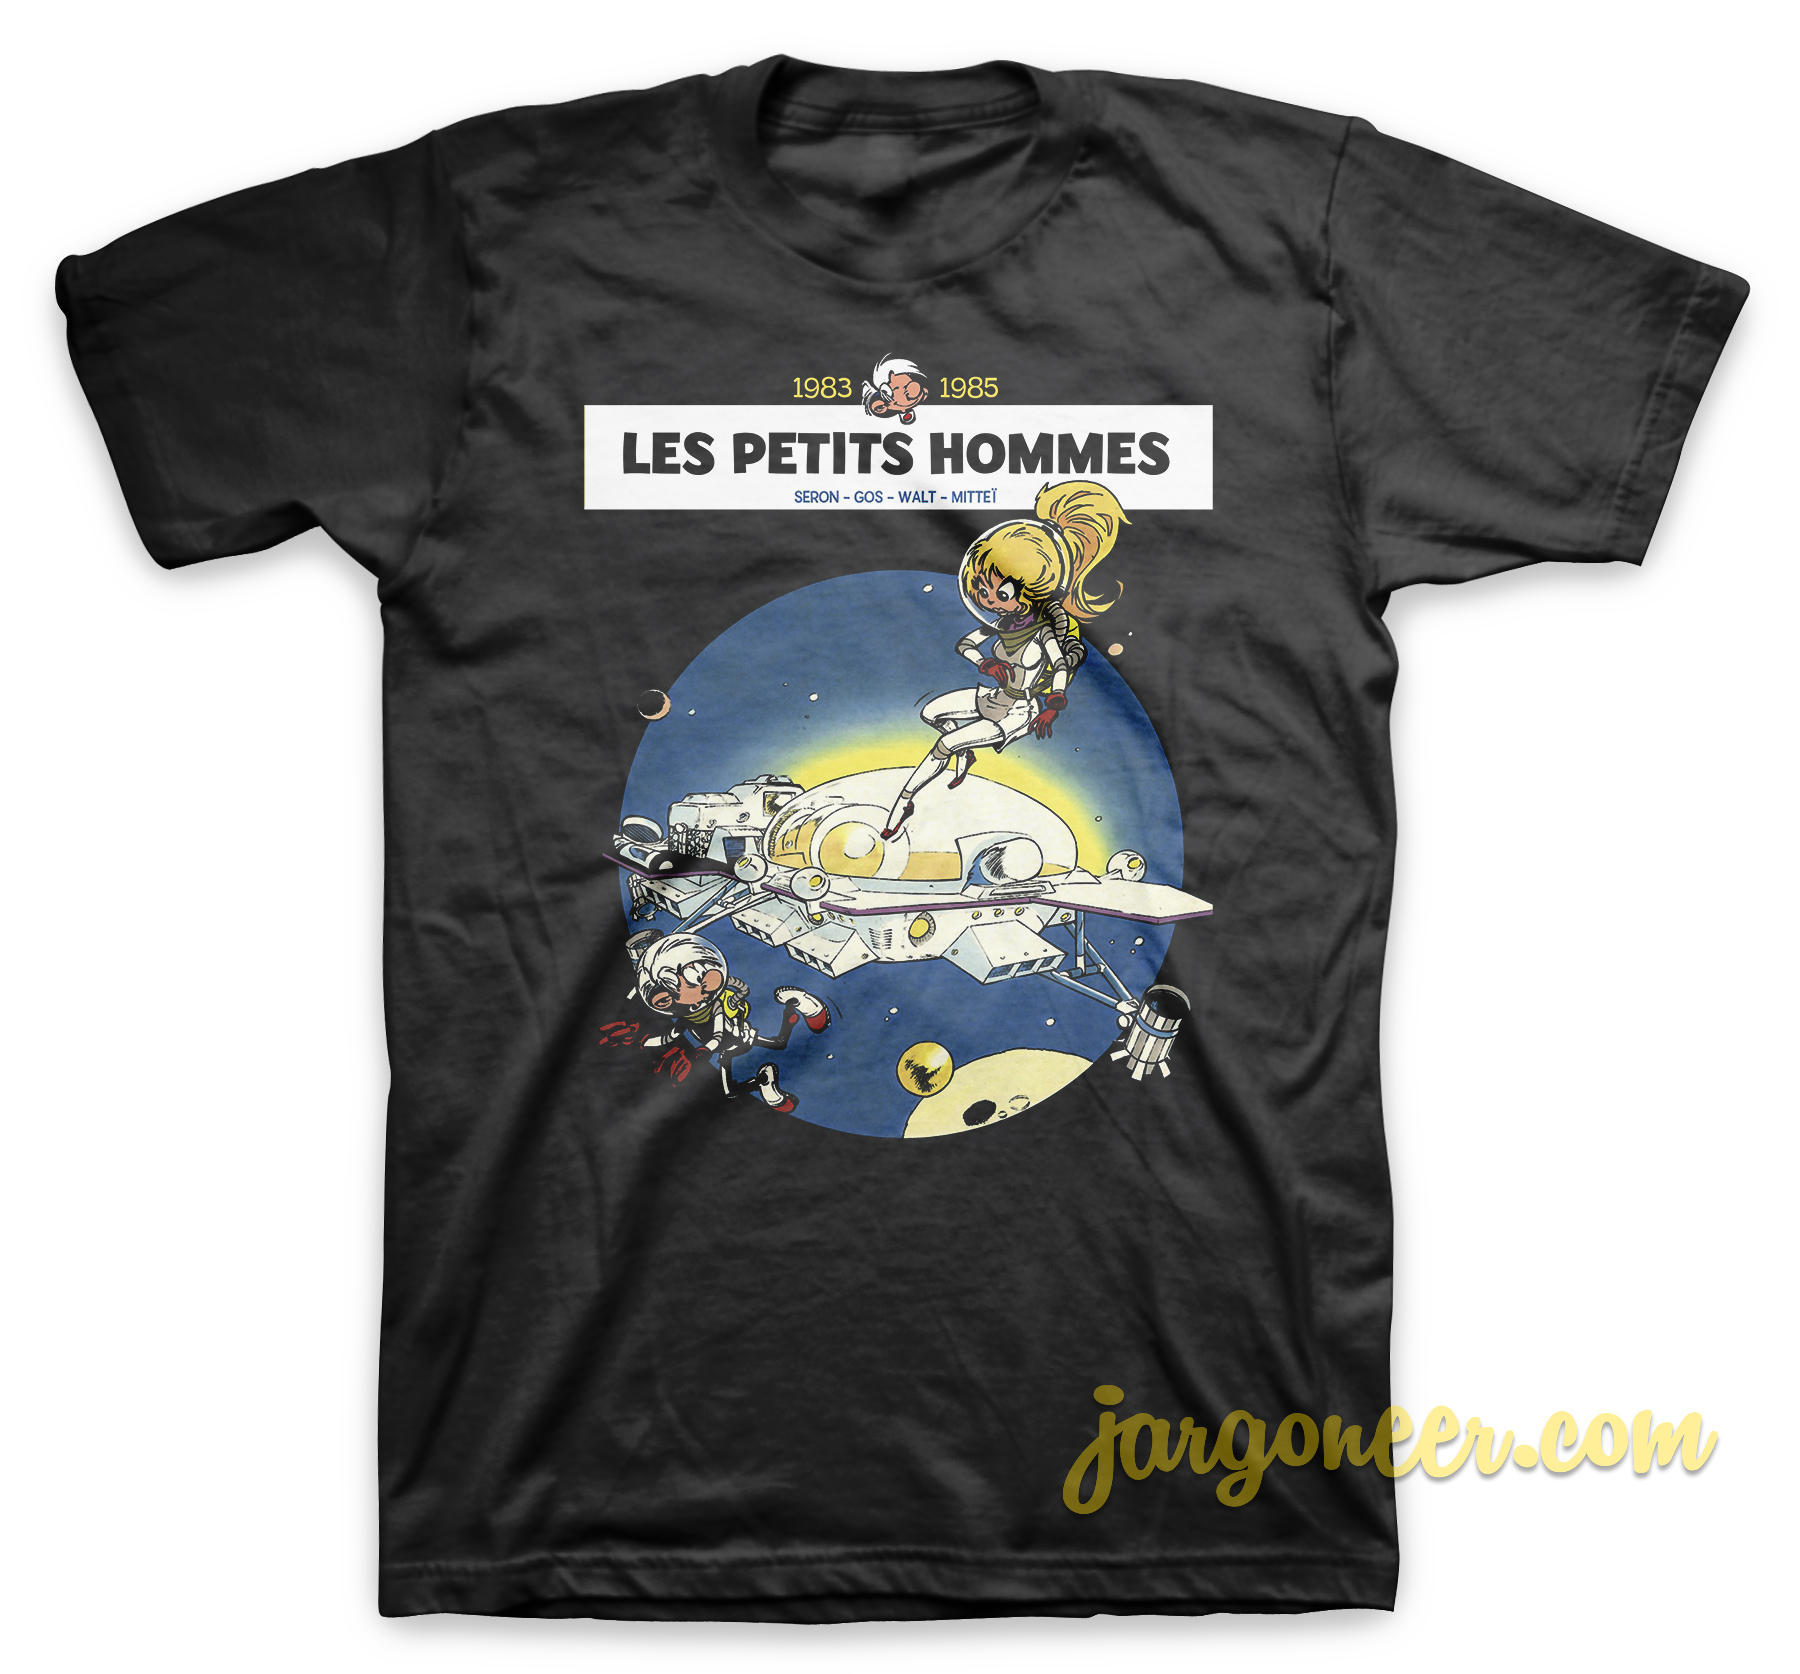 Les Petits Hommes Black T Shirt - Shop Unique Graphic Cool Shirt Designs